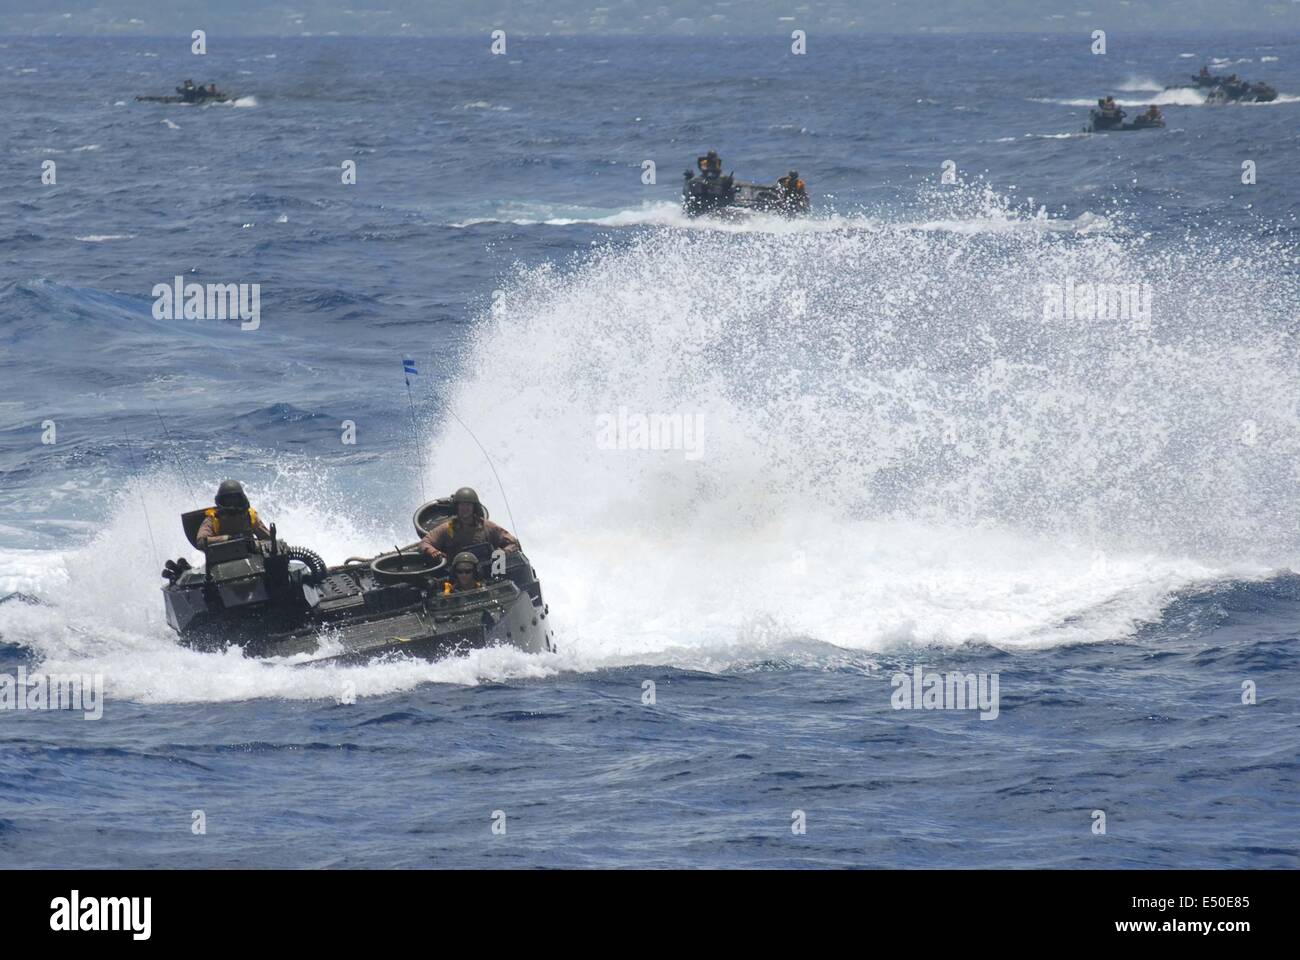 La baie de Kaneohe, Hawaii. 10 juillet, 2014. Le 18 juillet : les véhicules d'assaut amphibie (AAV) de l'US Marine Corps assister à une opération de débarquement dans le cadre du Pacific Rim l'exercice conjoint ou de l'exercice RIMPAC 2014 M-01 de wet embarquement en navire de guerre, USS Rushmore LSD-47 le 9 juillet 2014 dans la baie de Kaneohe, Oahu, Hawaii. Un total de 13 pièces de AAV et 2 véhicule d'atterrissage d'un suivi (LVT) -7 serait l'atterrissage dans une série d'exercices de mécanique dans les débarquements dans MCTAB invasion (Zone d'entraînement du Corps des Marines des soufflets) © Sijori Images/ZUMA/Alamy Fil Live News Banque D'Images